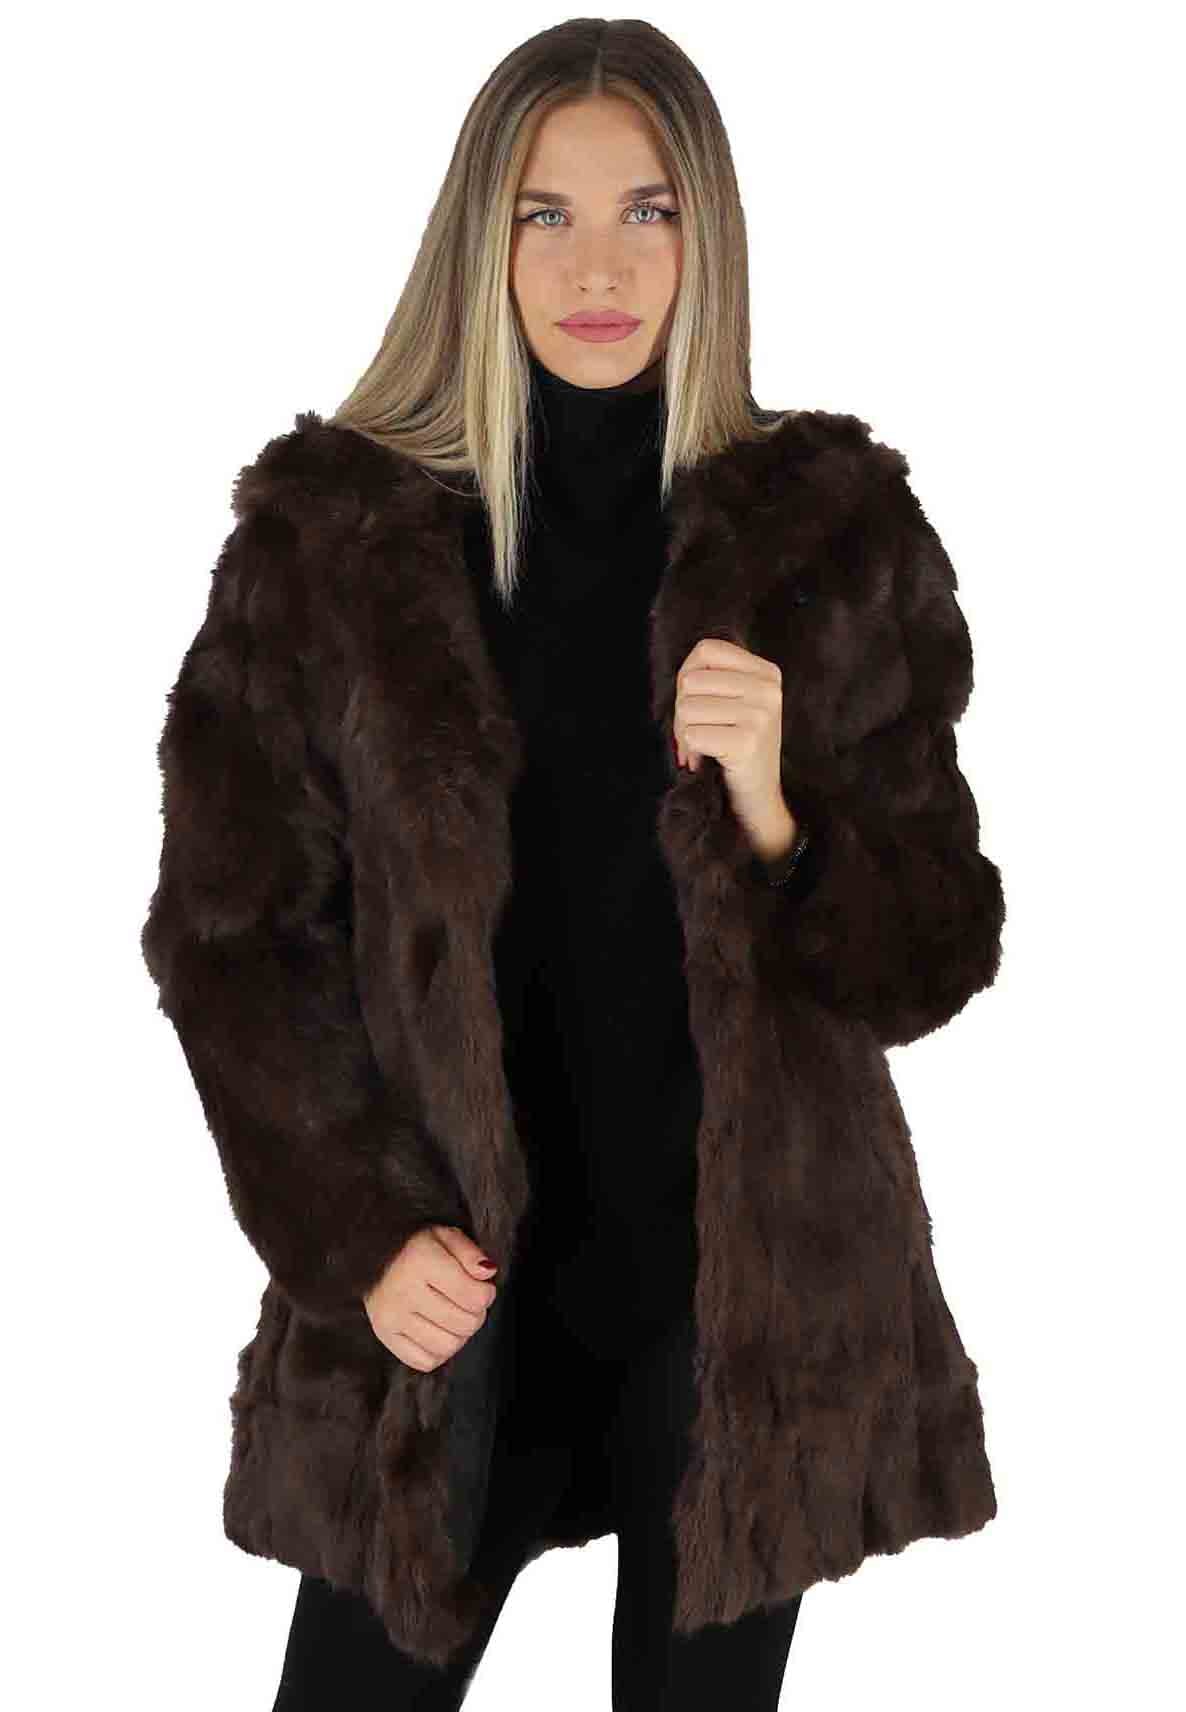 Women's brown rabbit fur parka coats with hood